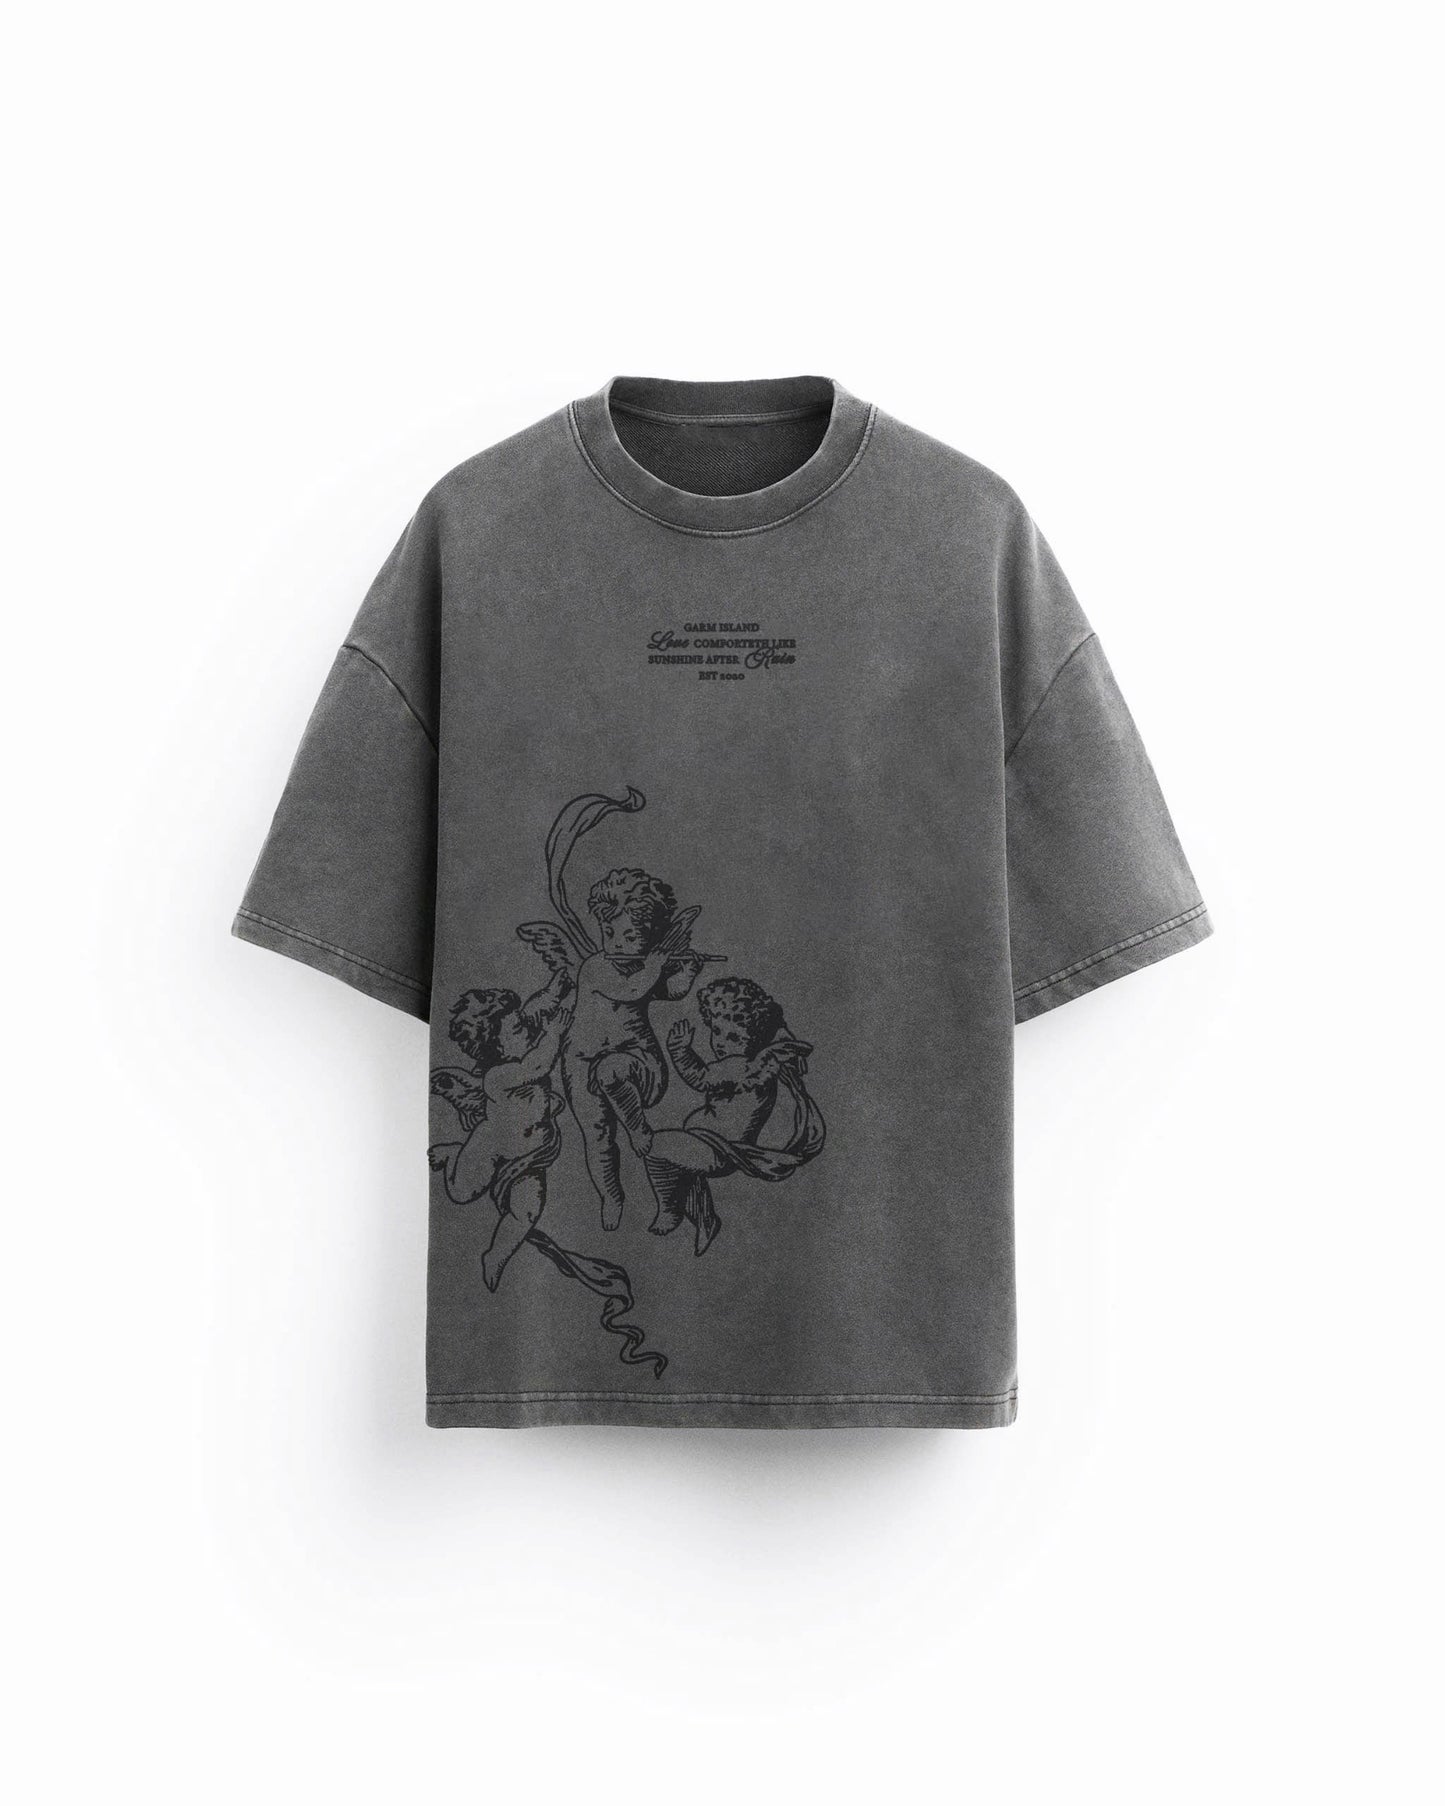 Garm Island Cherub T-shirt in washed grey